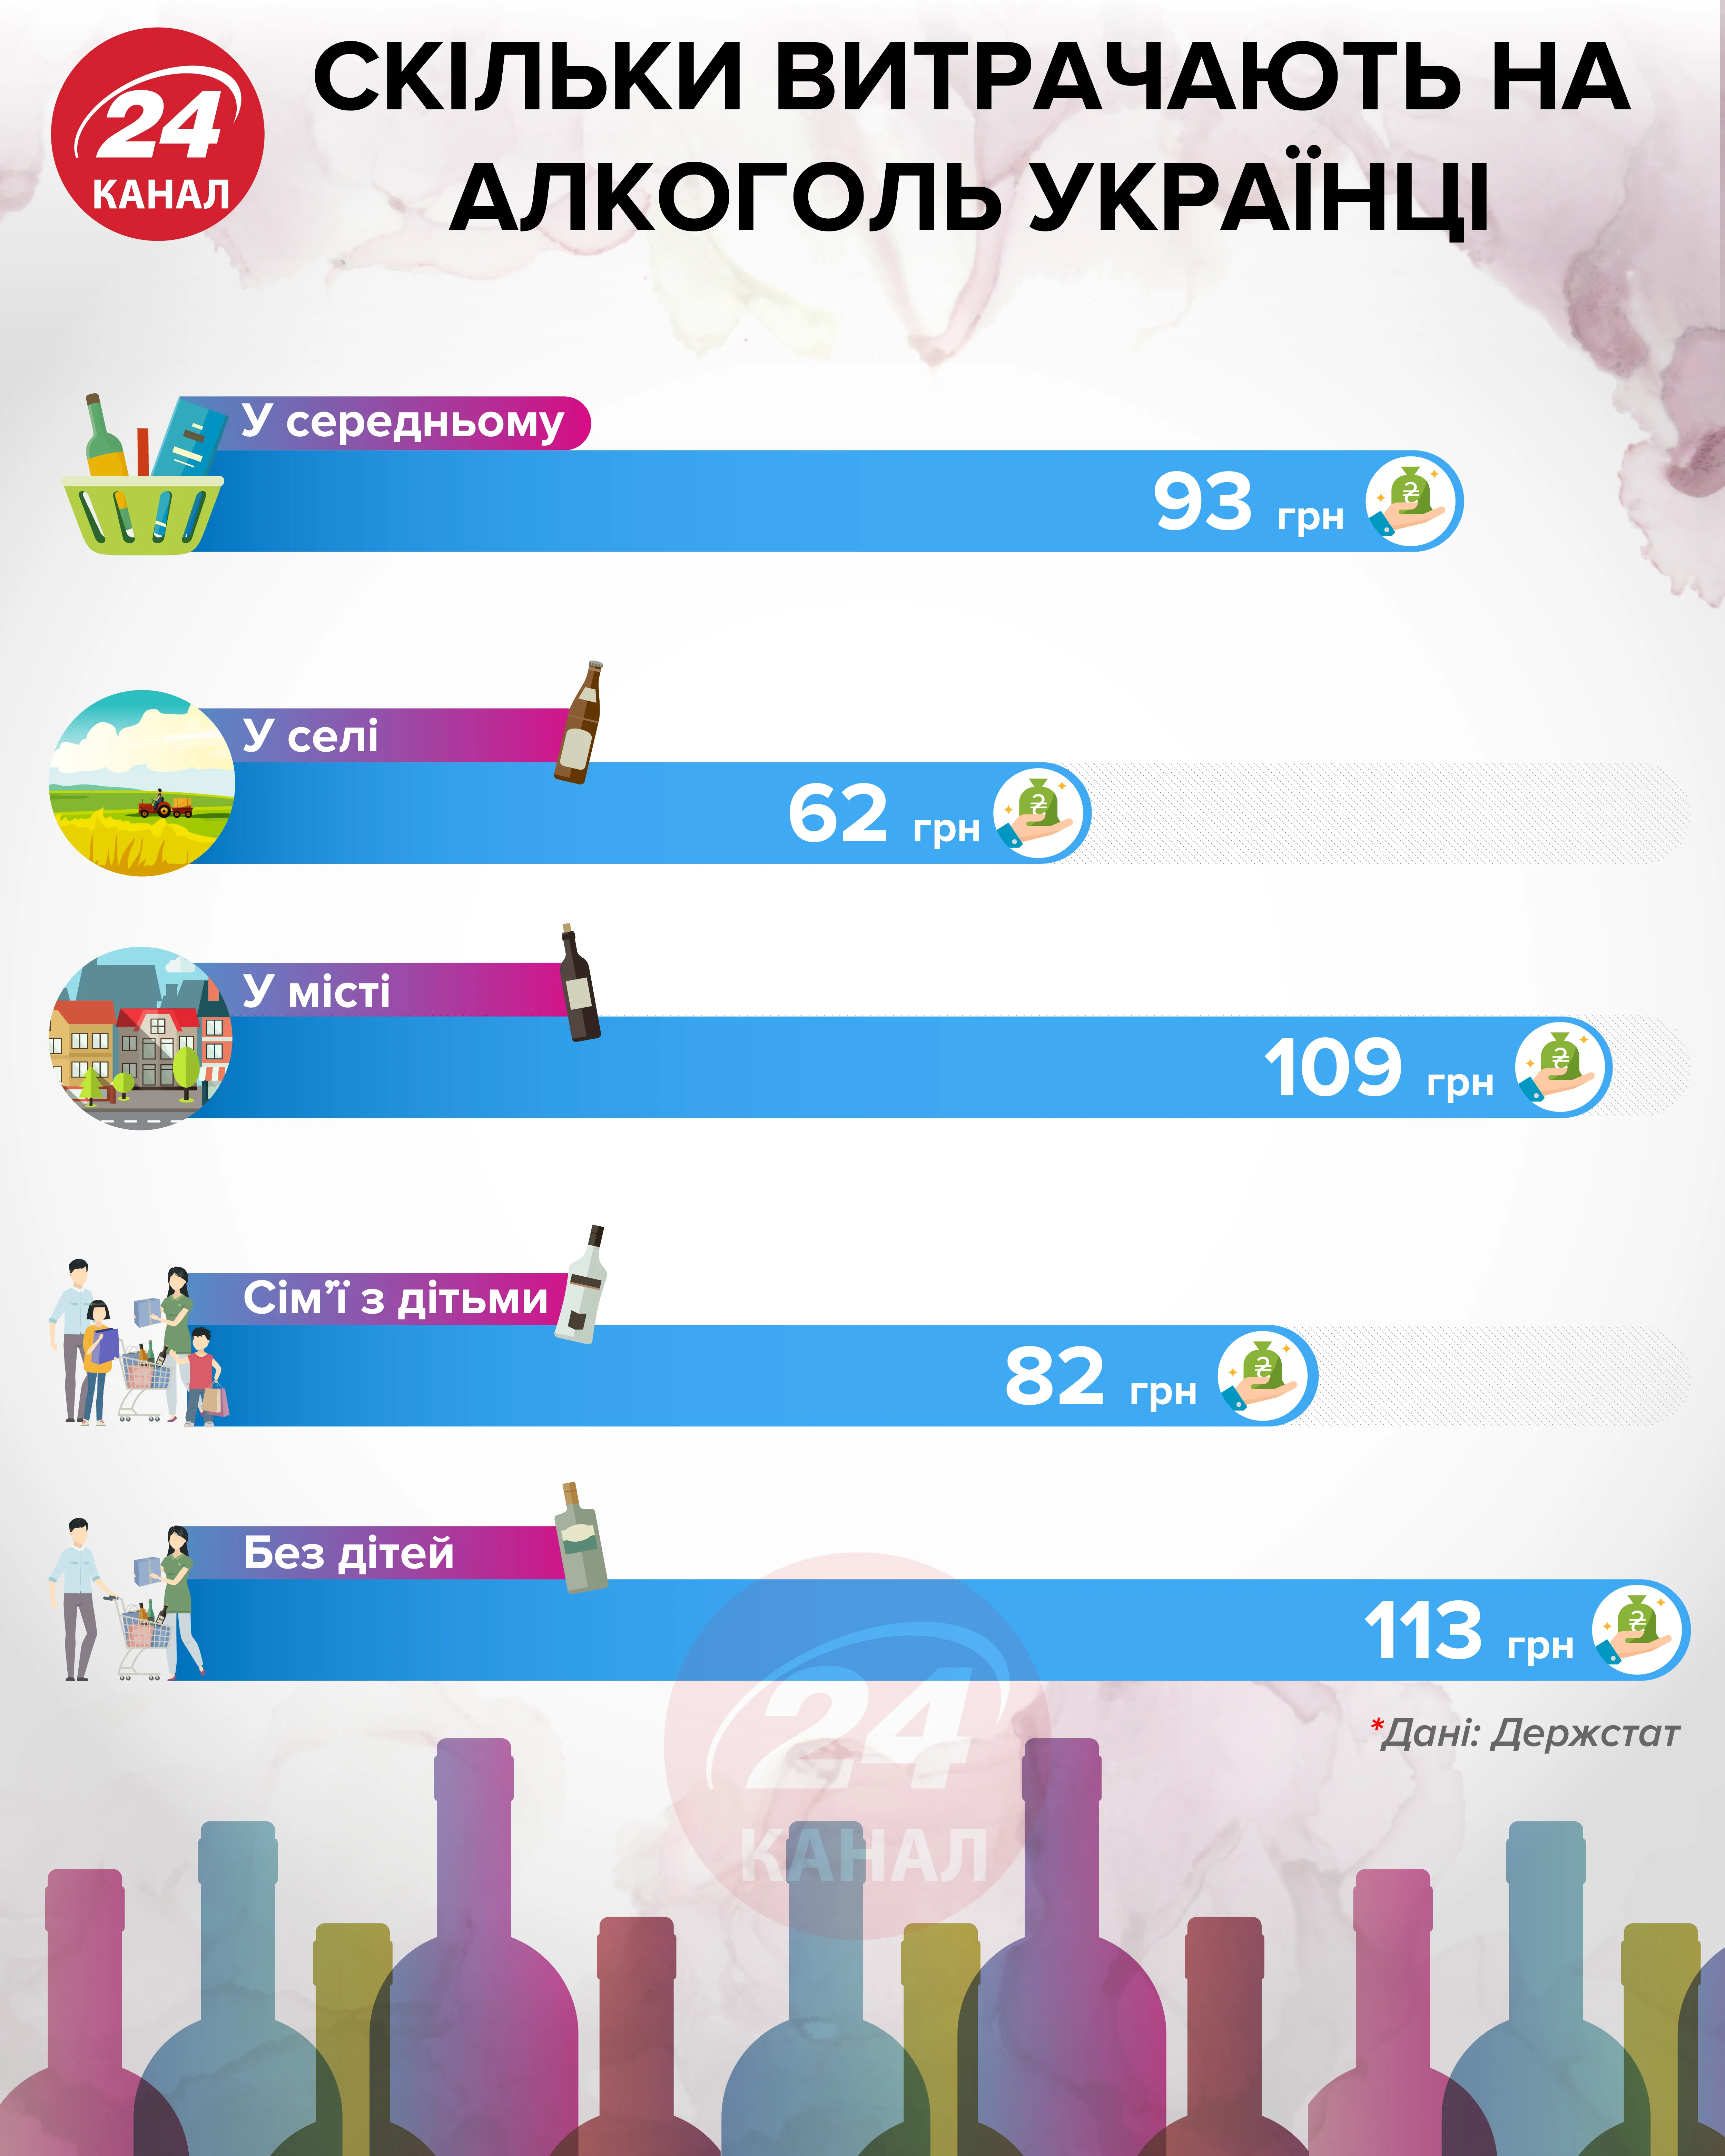 Скільки витрачають на алкоголь українці інфографіка 24 канал